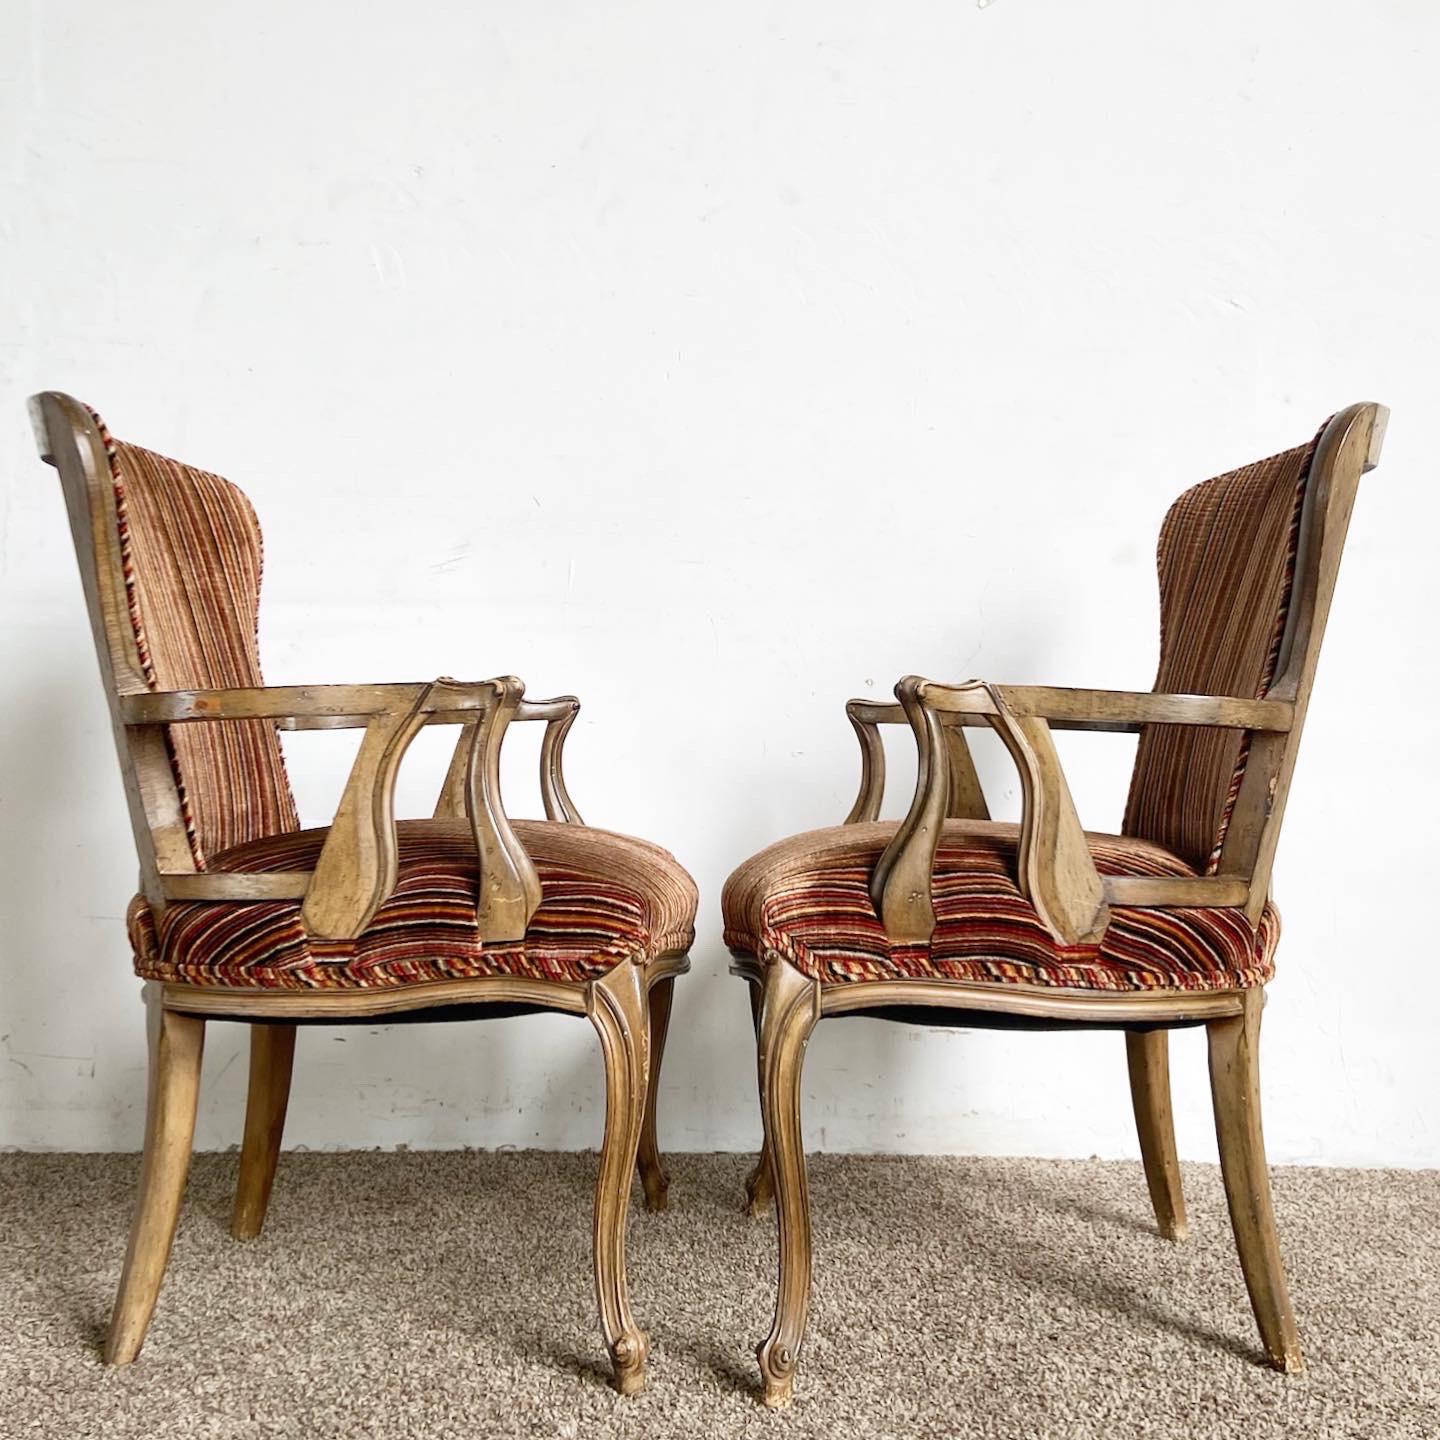 Élevez votre décoration intérieure avec notre paire de chaises à bras traditionnelles en bois et tissu rétro, offrant un mélange intemporel d'élégance, de durabilité et de confort.

Sa forme provinciale française lui confère un charme d'antan.
Le